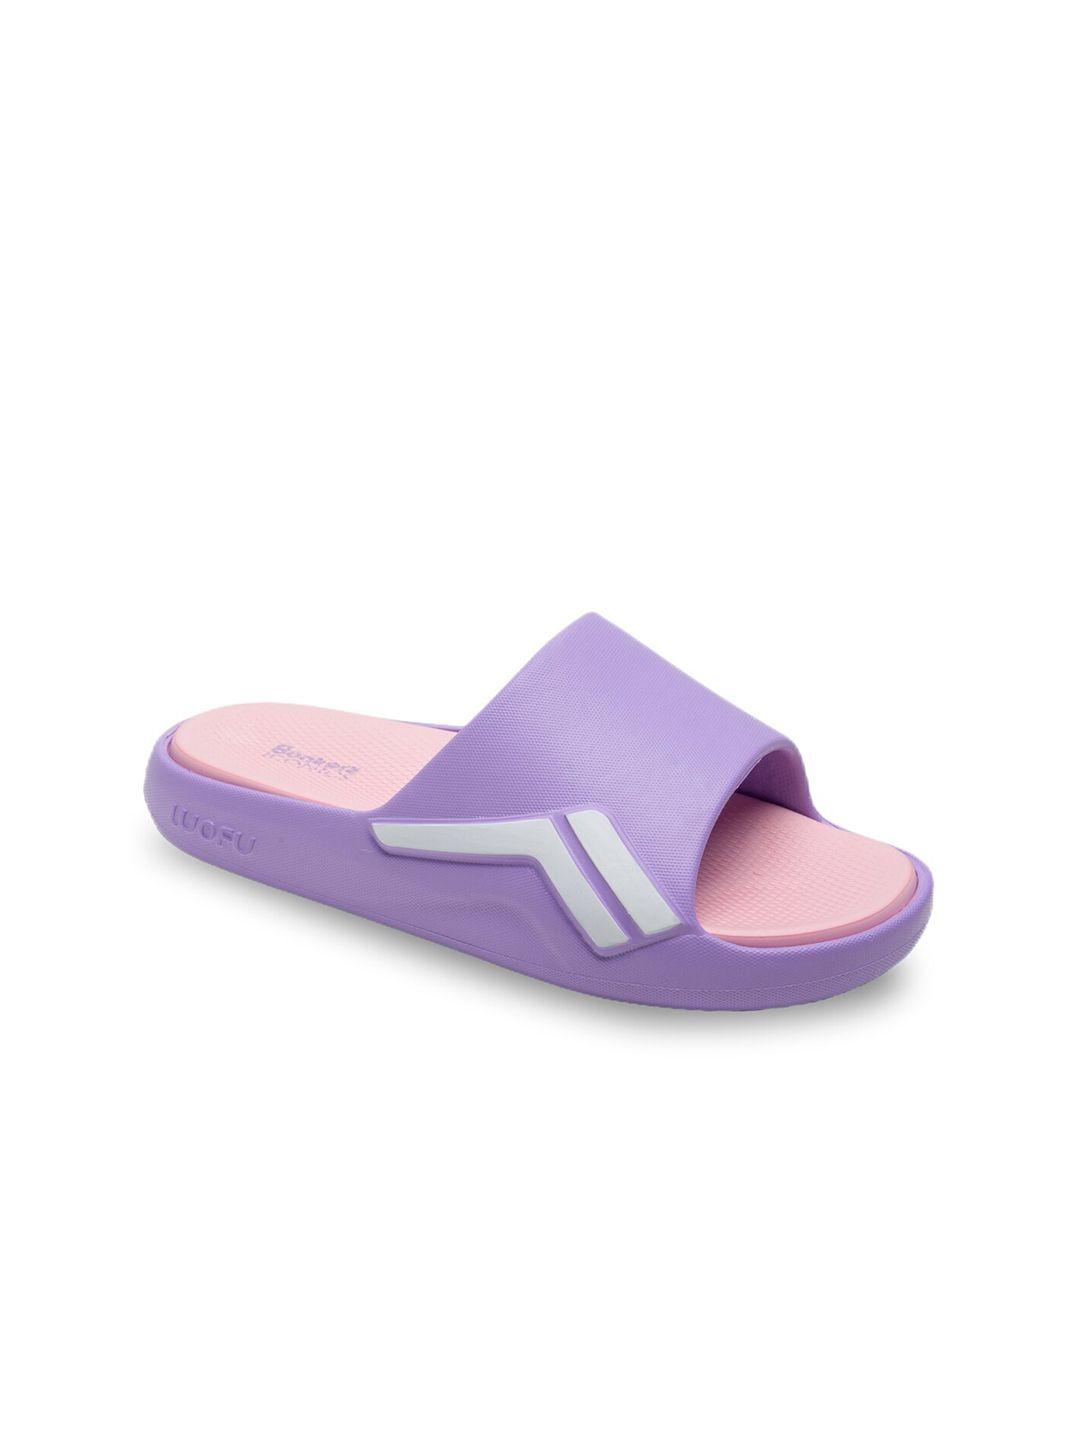 bonkerz-women-purple-&-pink-croslite-sliders